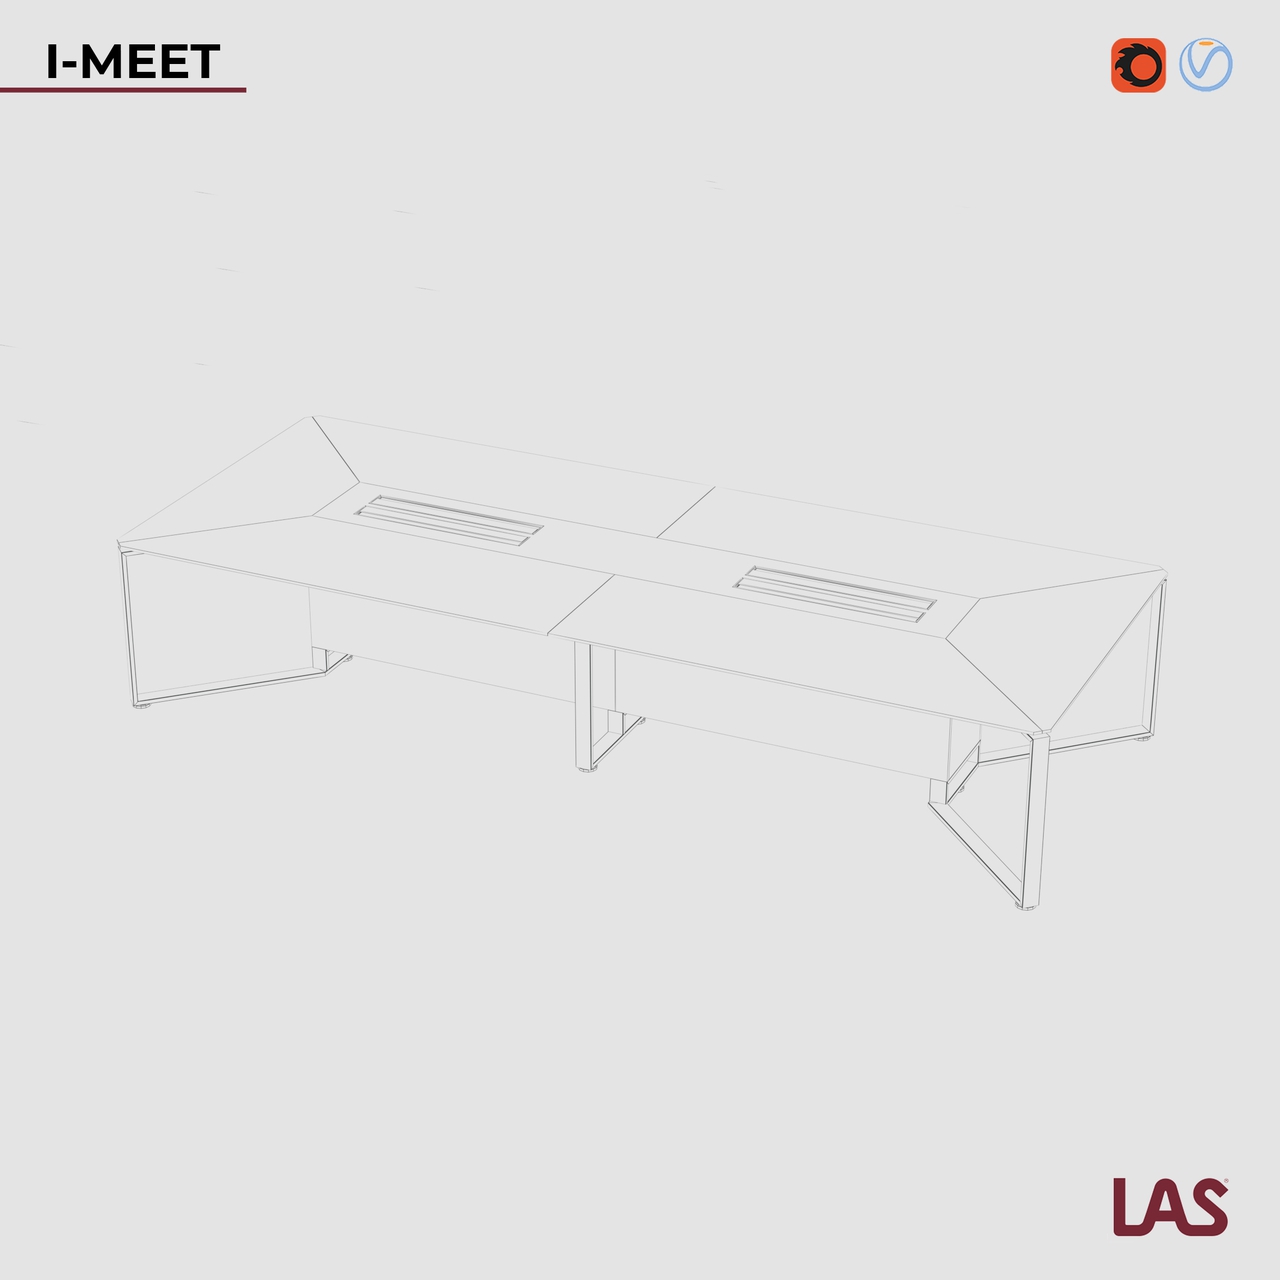 Превью G 3D-модели прямоугольного переговорного стола со стеклянной столешницей на 14 человек LAS I-Meet 146620